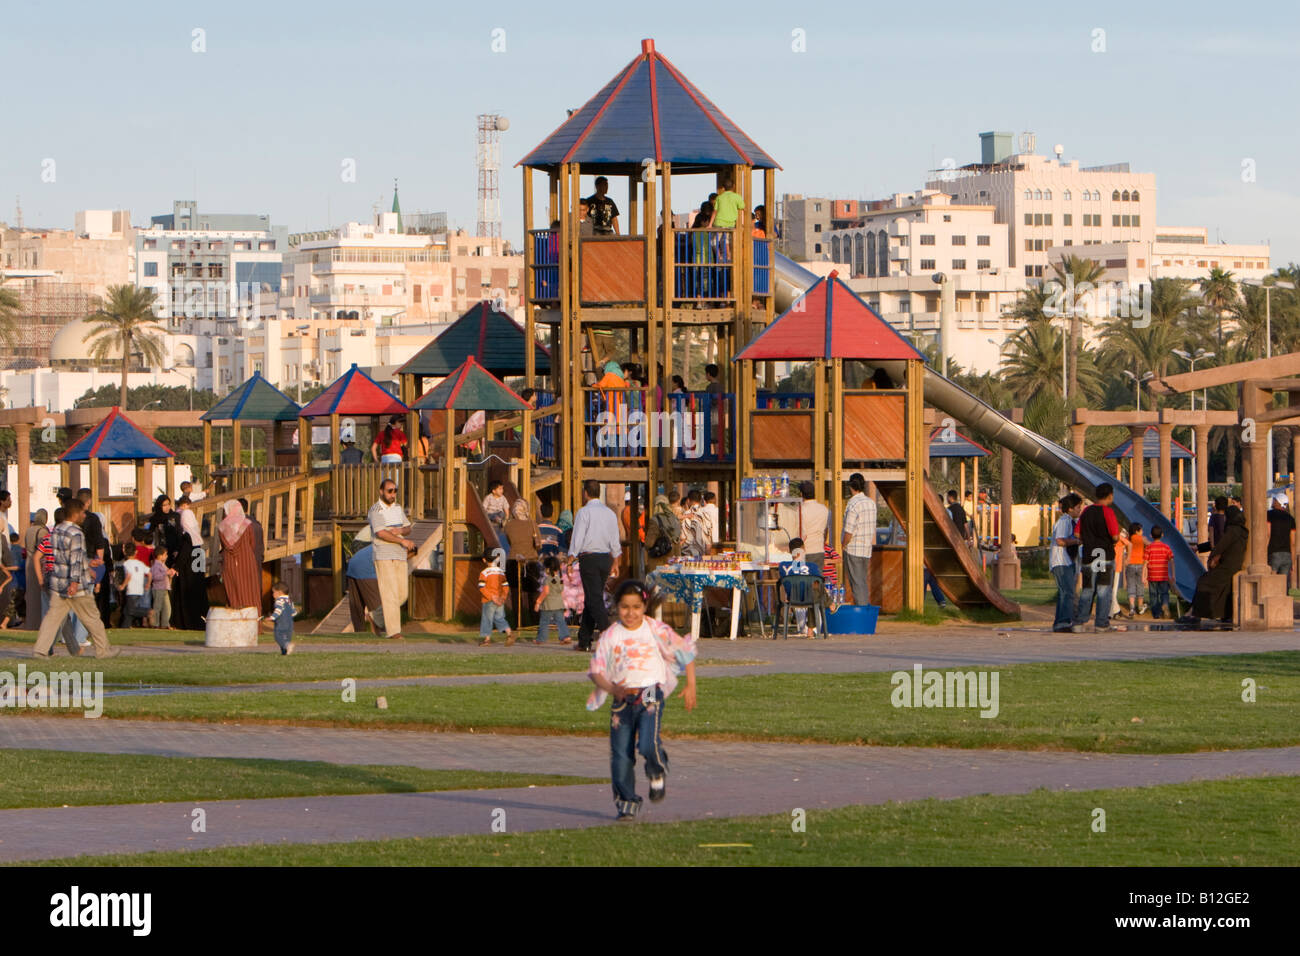 Tripoli, Libia, Nord Africa. Nel pomeriggio il parco pubblico Parco giochi vicino a piazza verde. I bambini sulla slitta, ragazza in esecuzione. Foto Stock